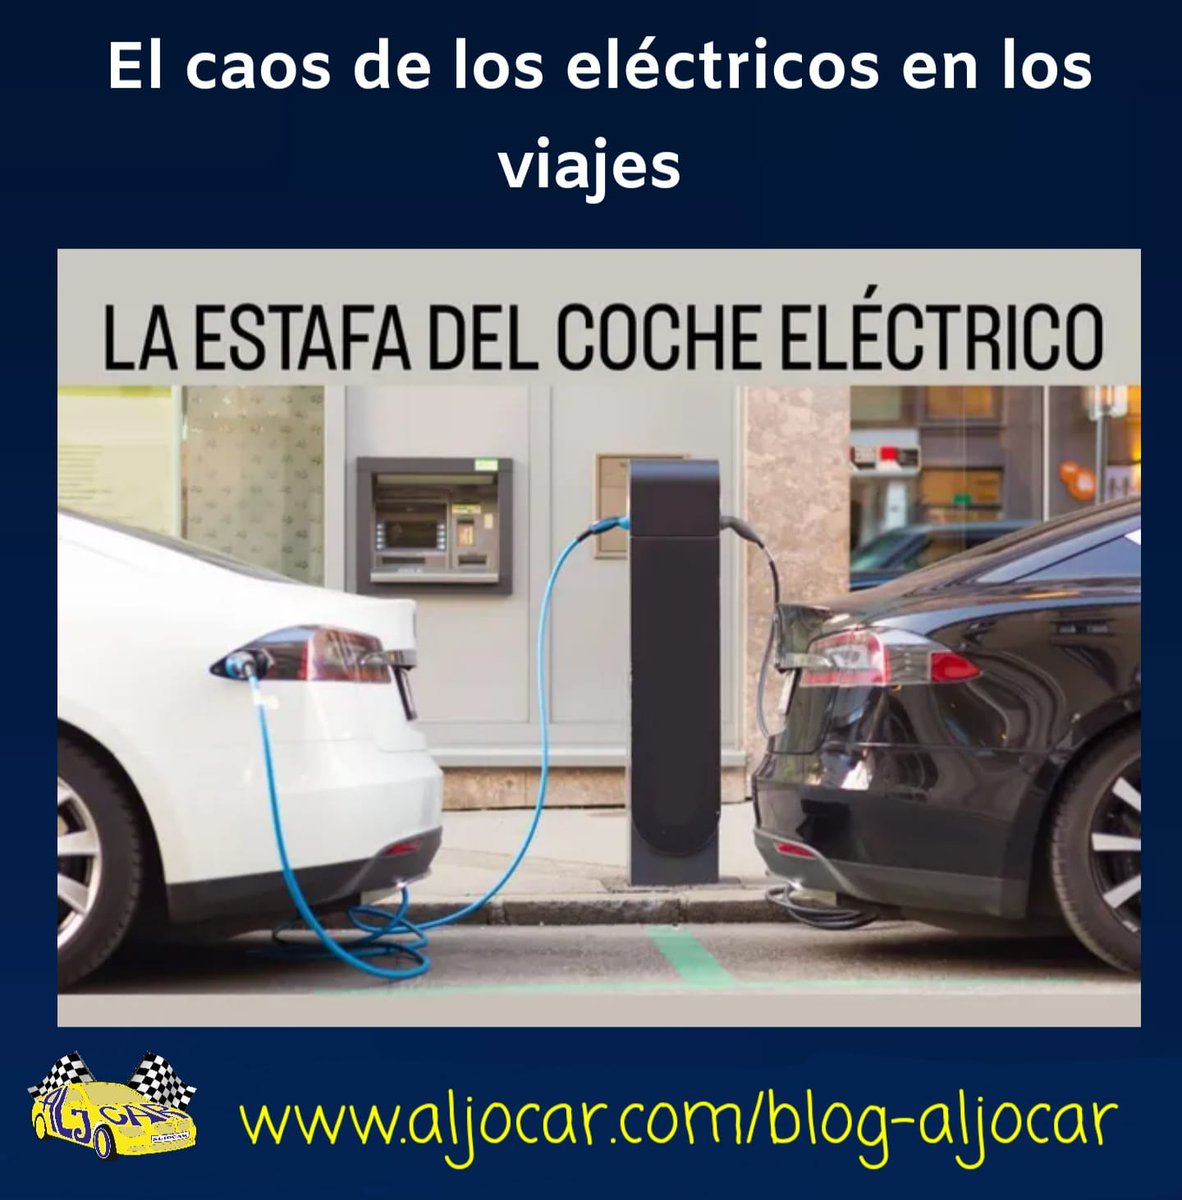 Nuestra opinión sobre el vehículo eléctrico ya la sabéis, cada uno que valore si le interesa comprar un coche eléctrico.

aljocar.com/el-caos-de-los…

#Aljocar #leonesp #automoción #automovil #ComercioLocal #RecambioOriginal #recambio #YoComproEnLeon #CocheElectrico #estafa #engaño